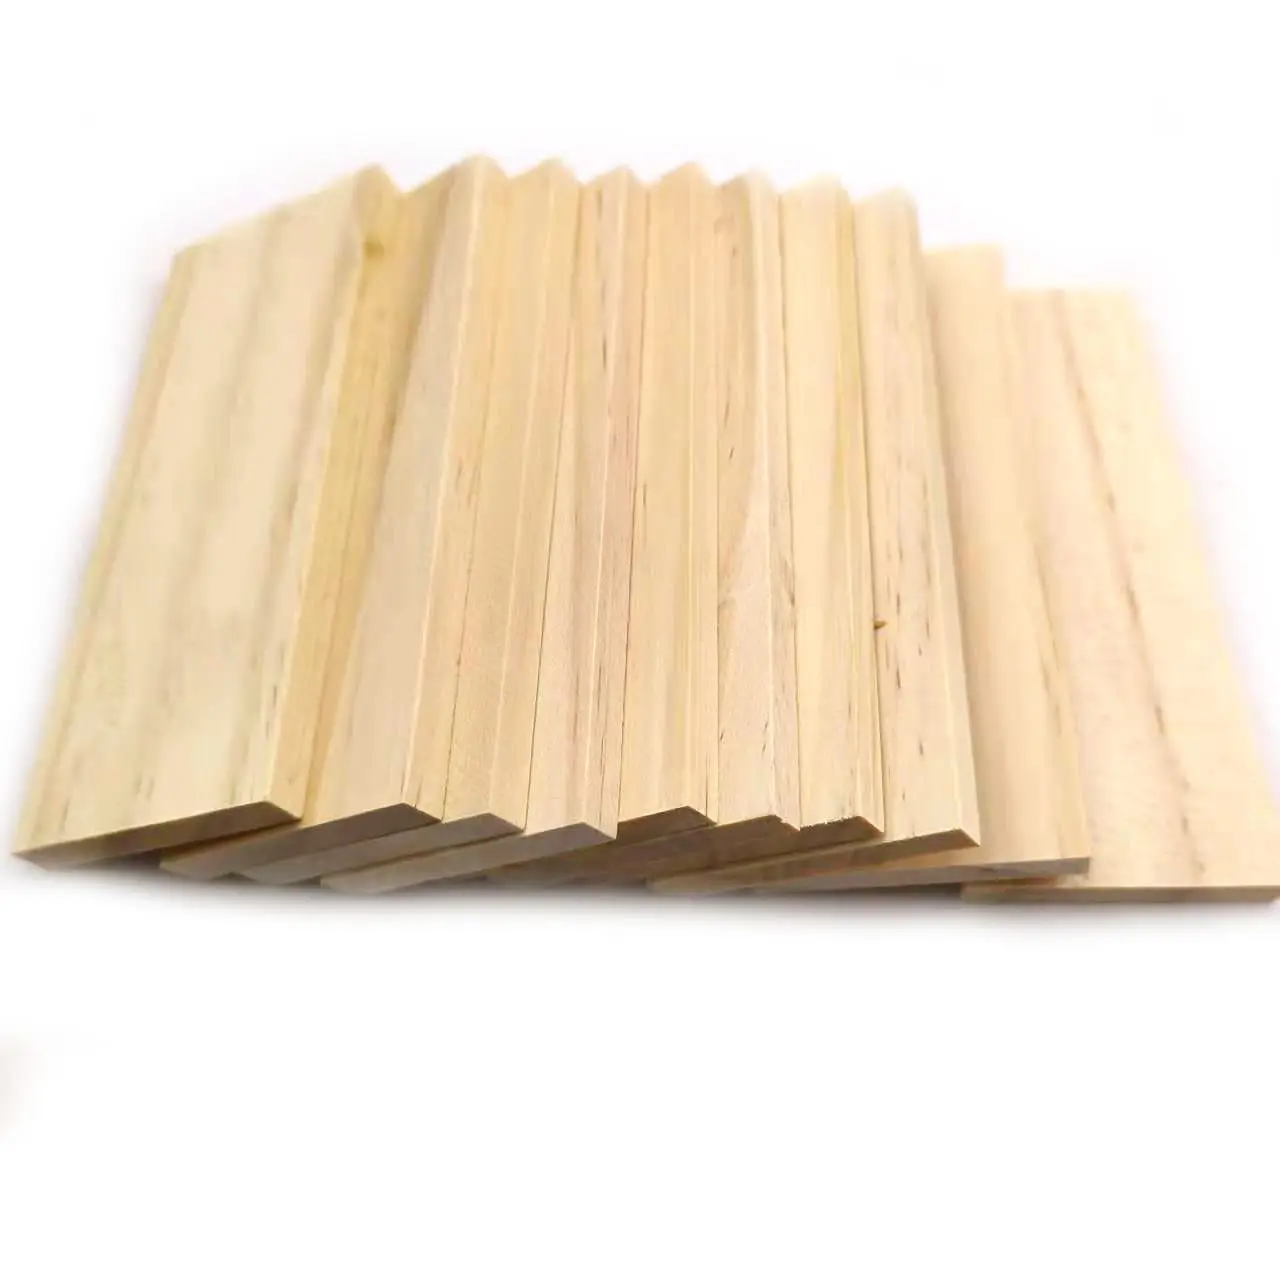 Placa retangular de madeira de pinha natural de 10cm, placa para artesanato diy com 10 peças